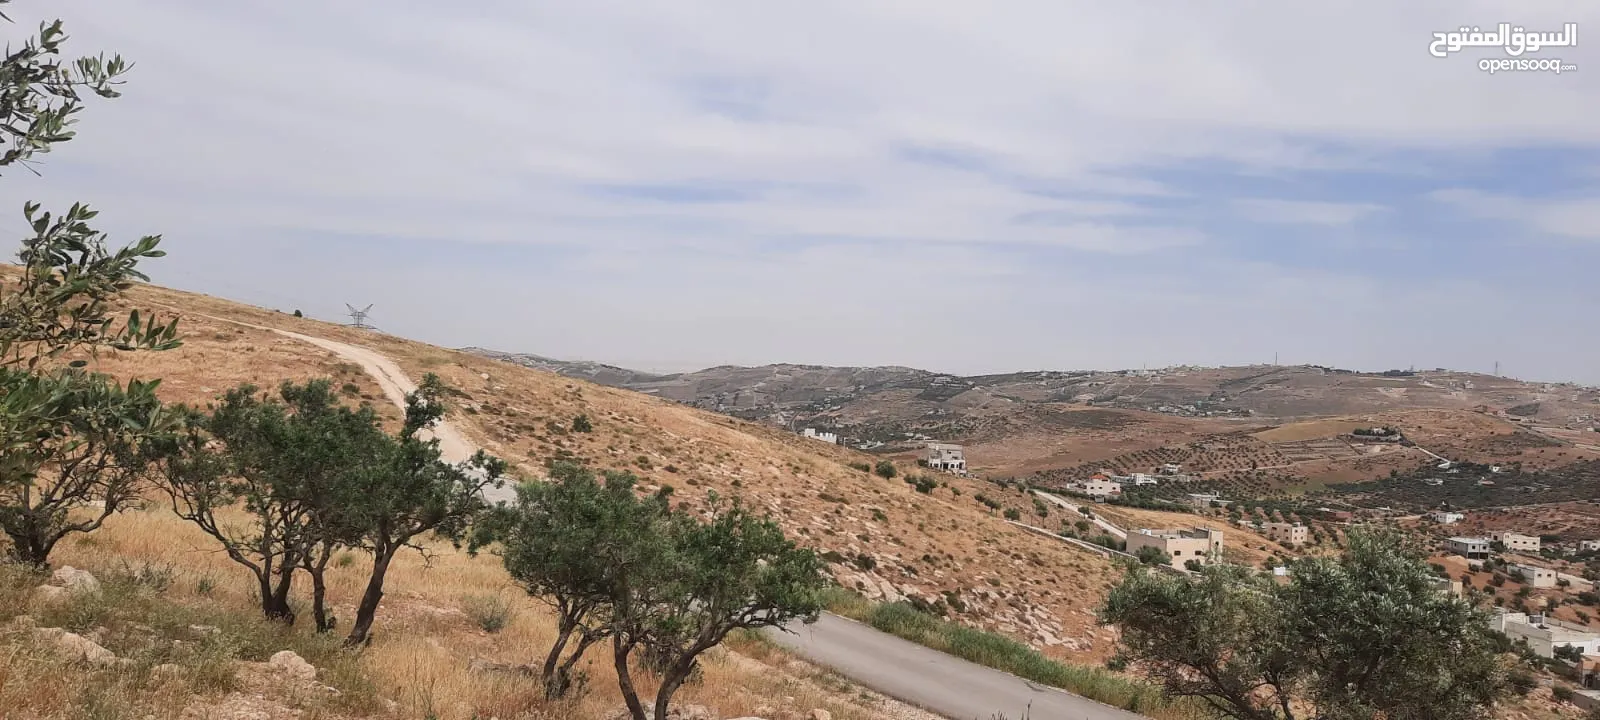 ارض فوق مطعم قصر الجبل ام رمانة معمر شارع الاردن اطلالة على كل عمان مميزة